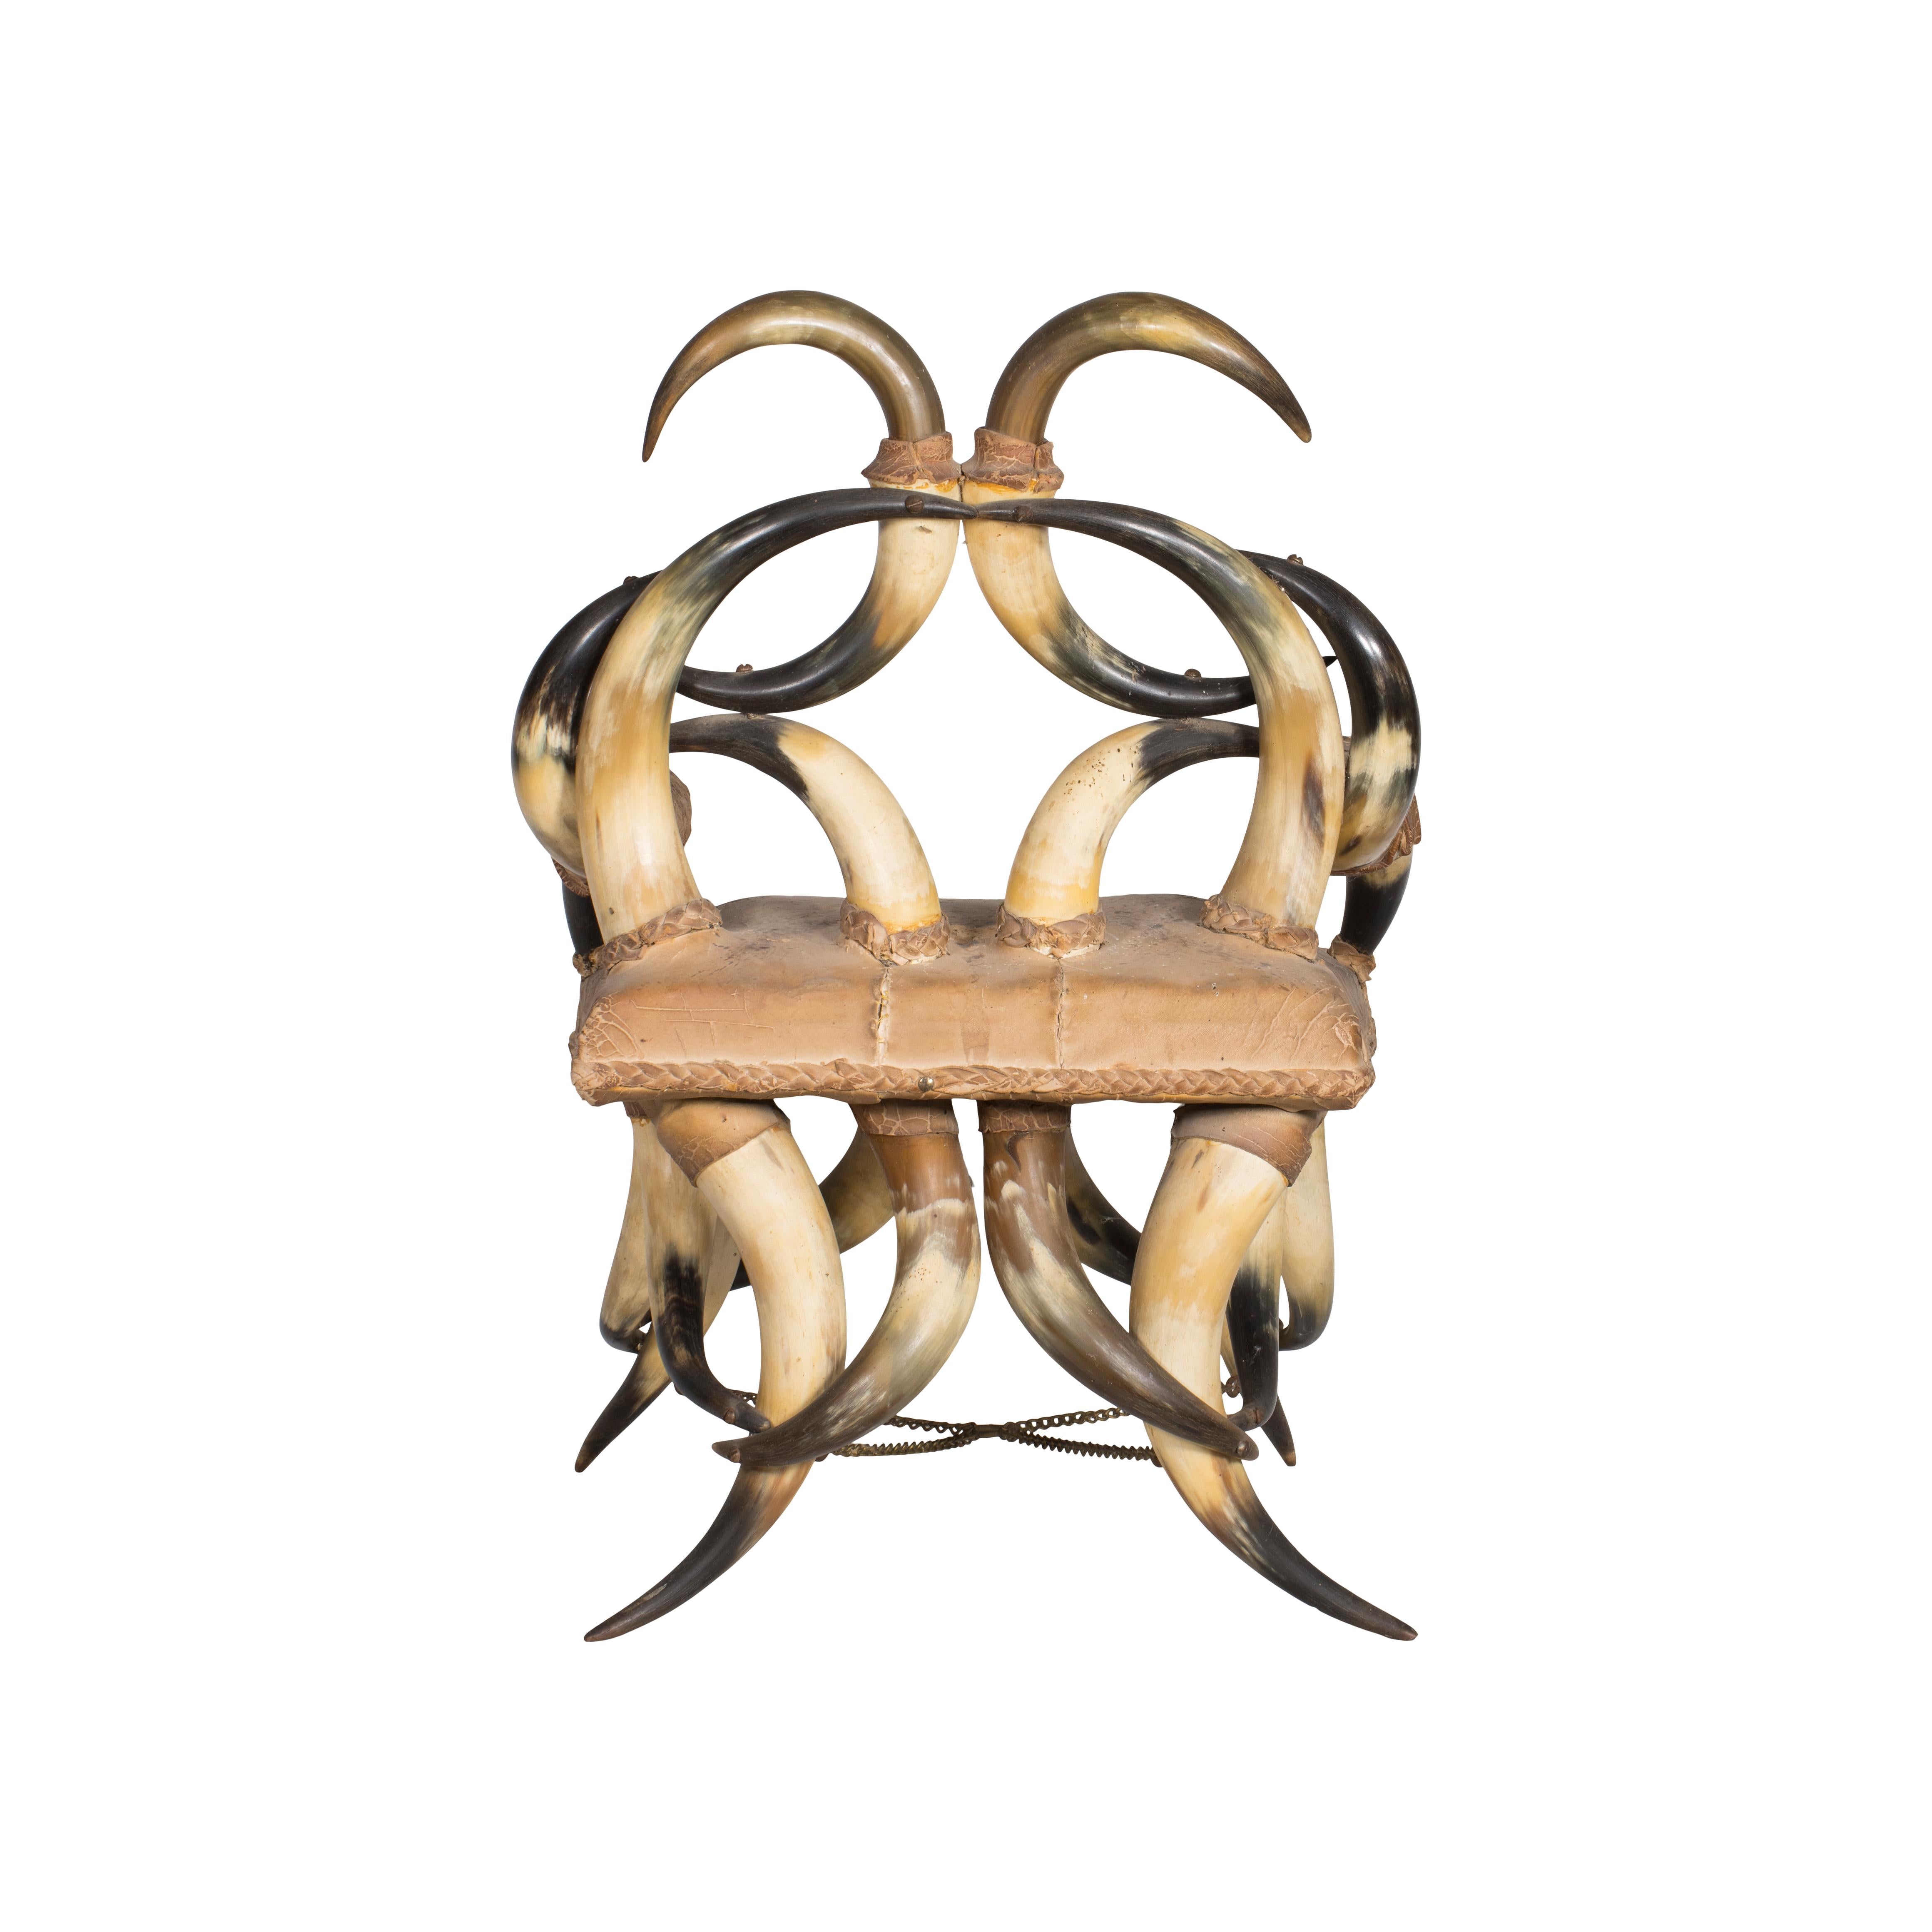 Vintage 24 Horn Beistellstuhl mit Originalpolsterung (könnte überarbeitet werden0. Die Basis des Stuhls ist komplett mit Hörnern gestaltet, ebenso wie die Rückenlehne und die Armlehnen. Der Sitz ist aus Vintage-Rindsleder. 21 